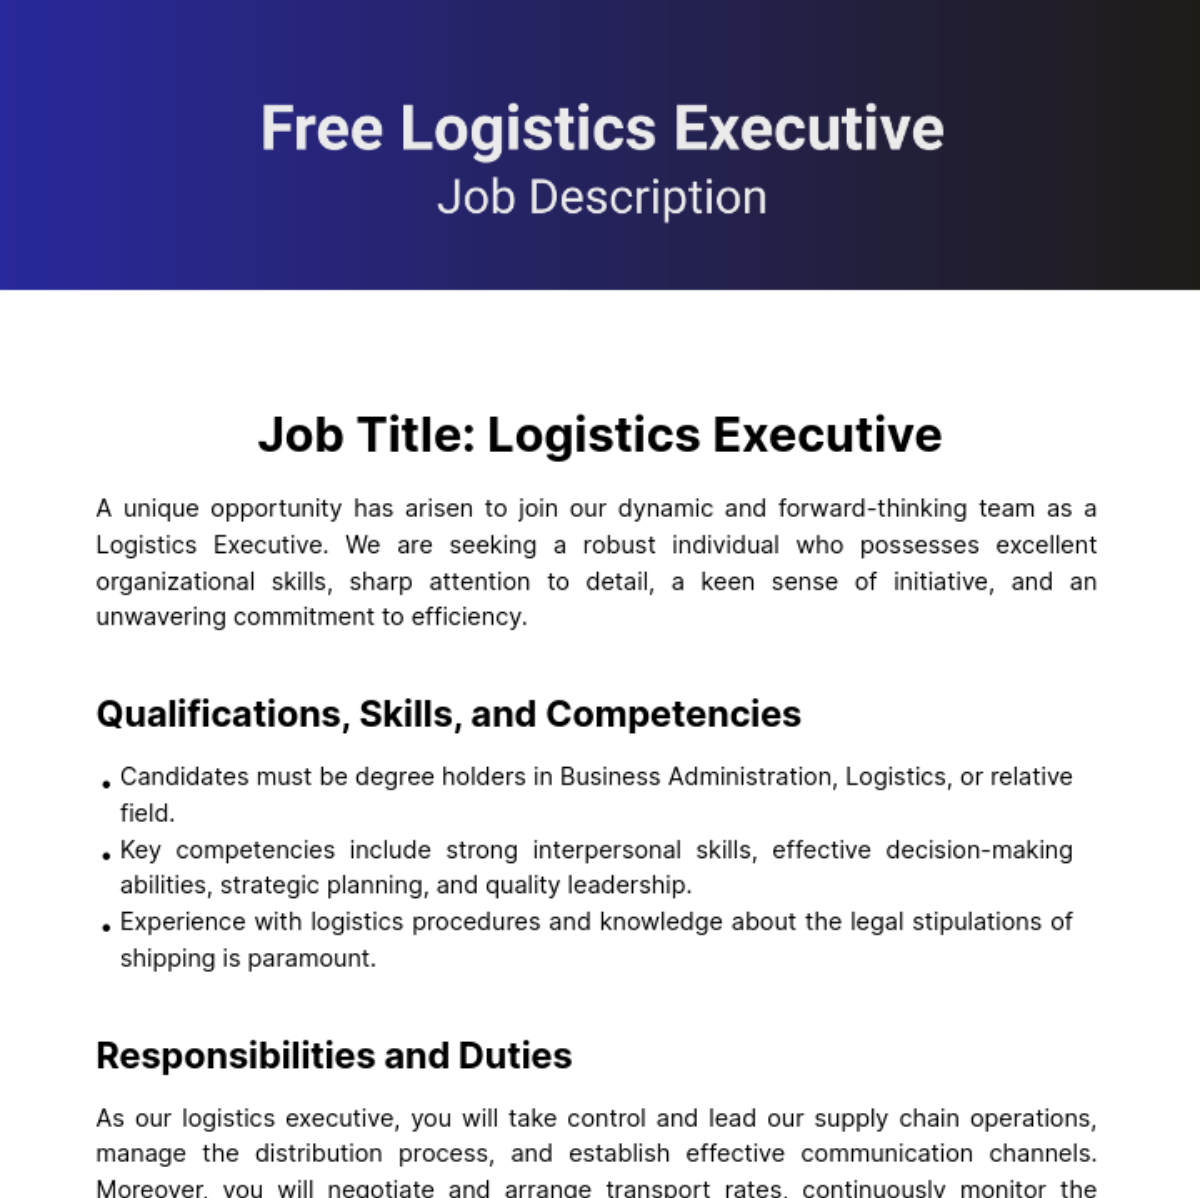 Free Logistics Executive Job Description Template